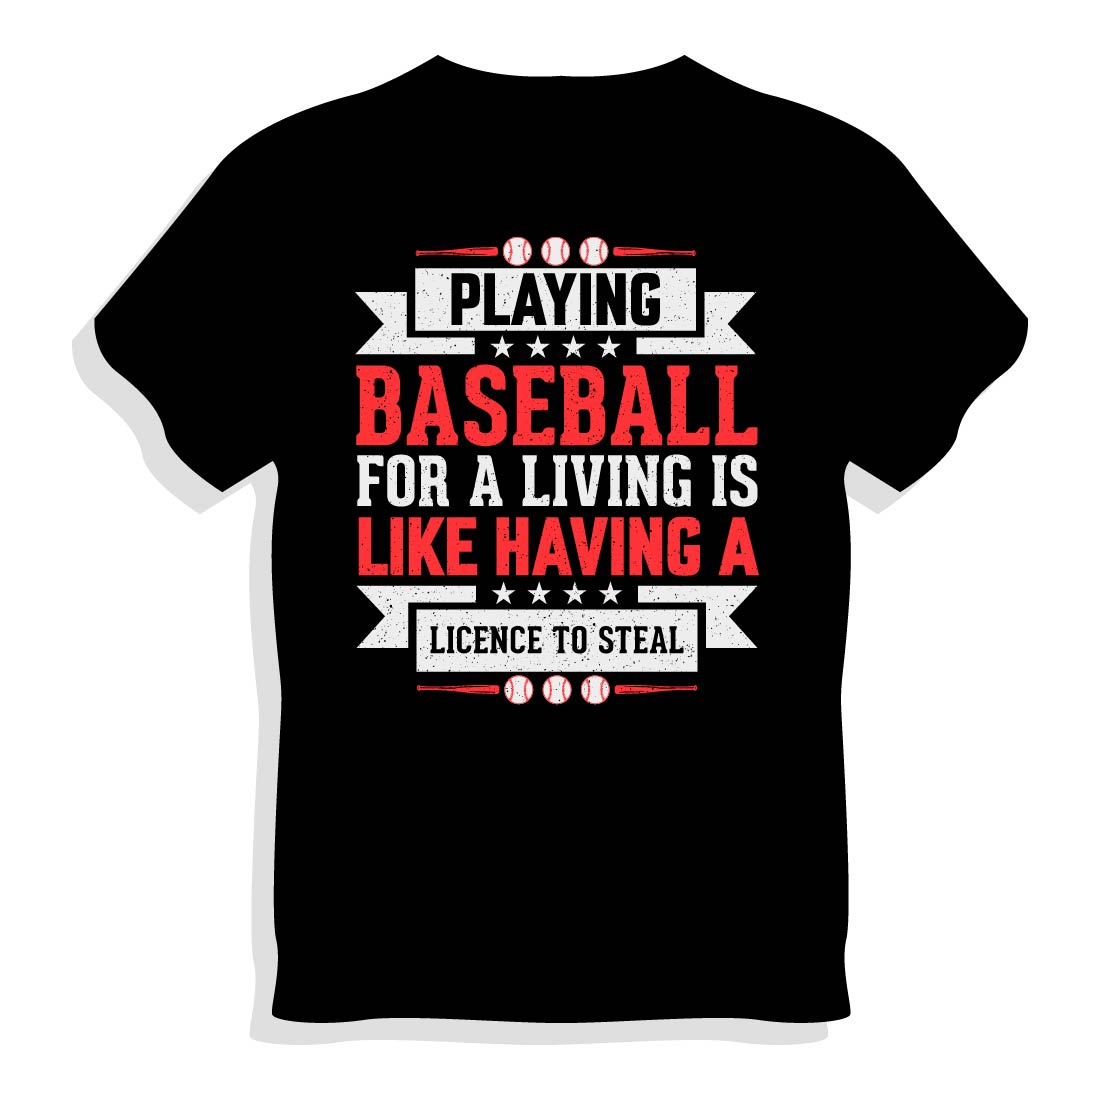 Baseball T-shirt Design cover image.